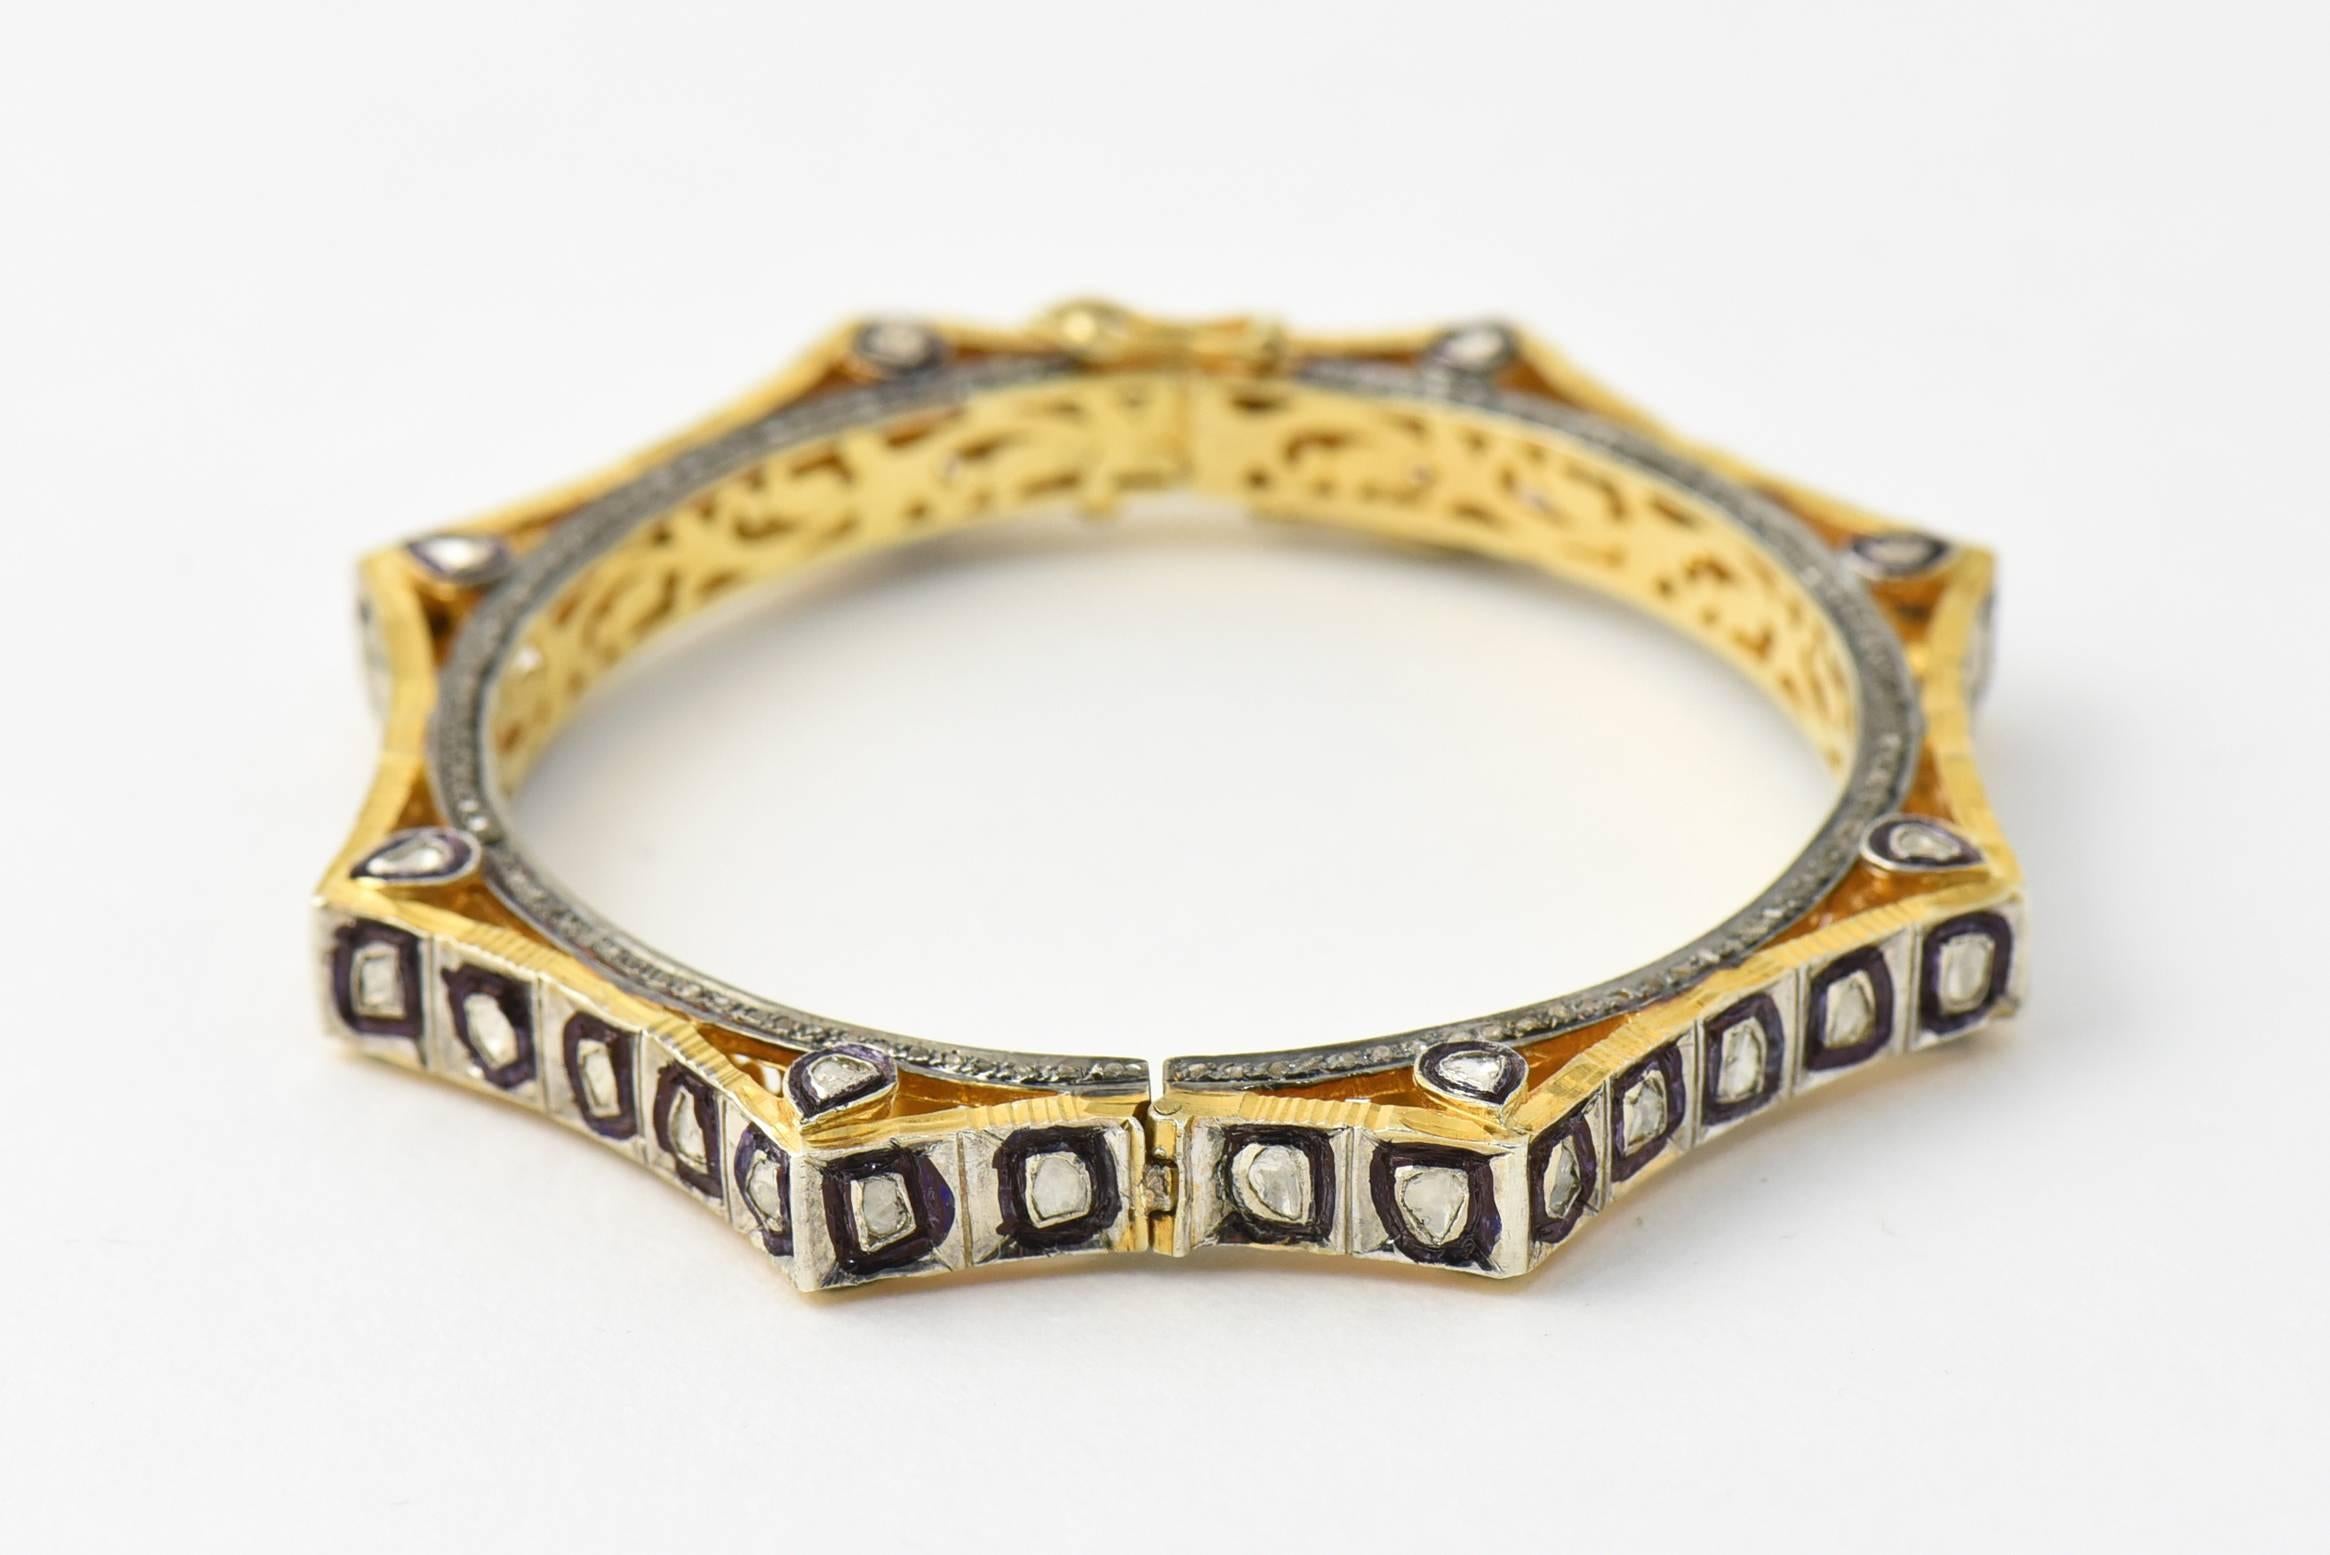 Magnifique bracelet indien en vermeil et diamants avec des diamants sur trois surfaces et un motif complexe percé à l'intérieur.

La circonférence intérieure est de 6,5